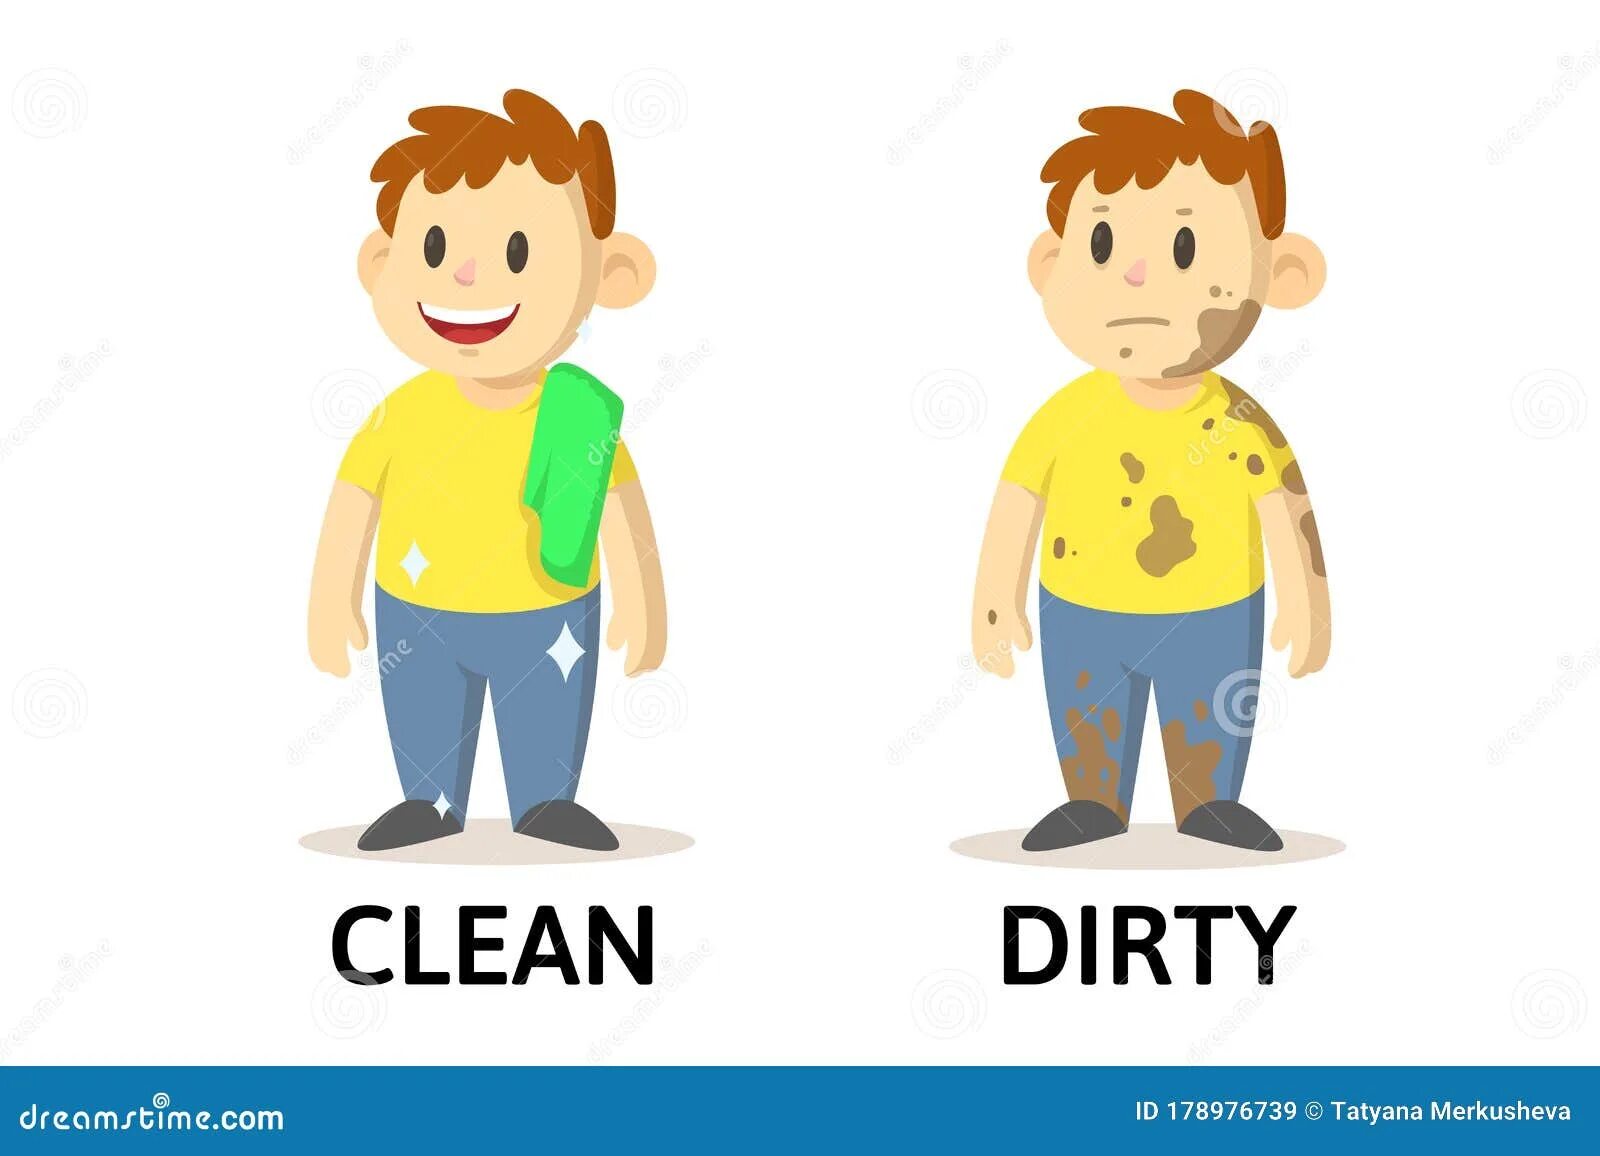 Opposite clean. Чистый и грязный мальчик. Грязный и чистый ребенок. Чистый мальчик грязный мальчик. Мальчик грязный для детей и чистый.